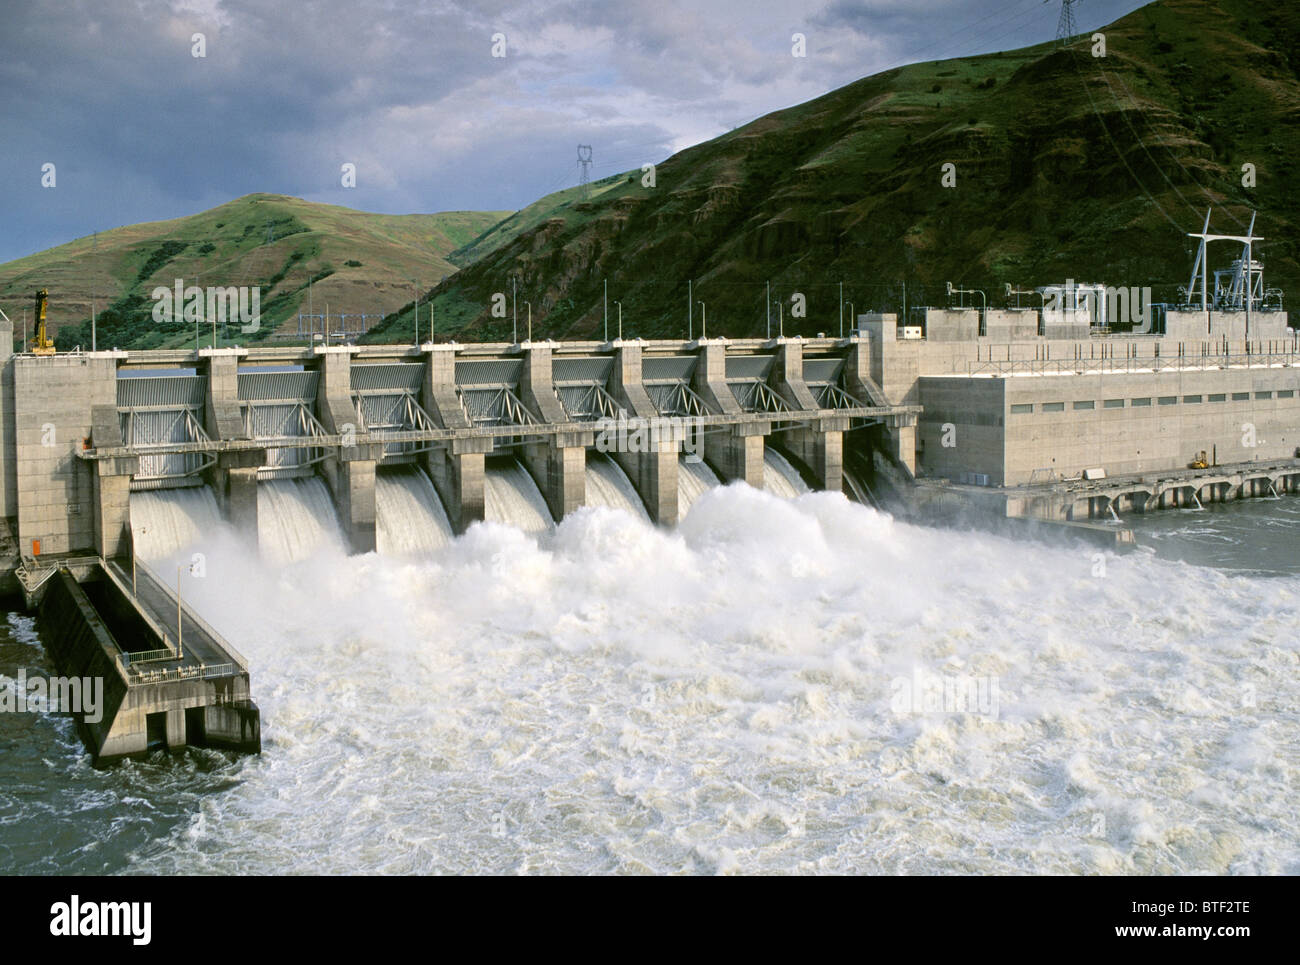 Senken Sie Granit Dam & Wasserkraftwerk am Snake River, Washington, USA. Vorgeschlagen für die Entfernung um Lachs Erholung zu unterstützen. Stockfoto